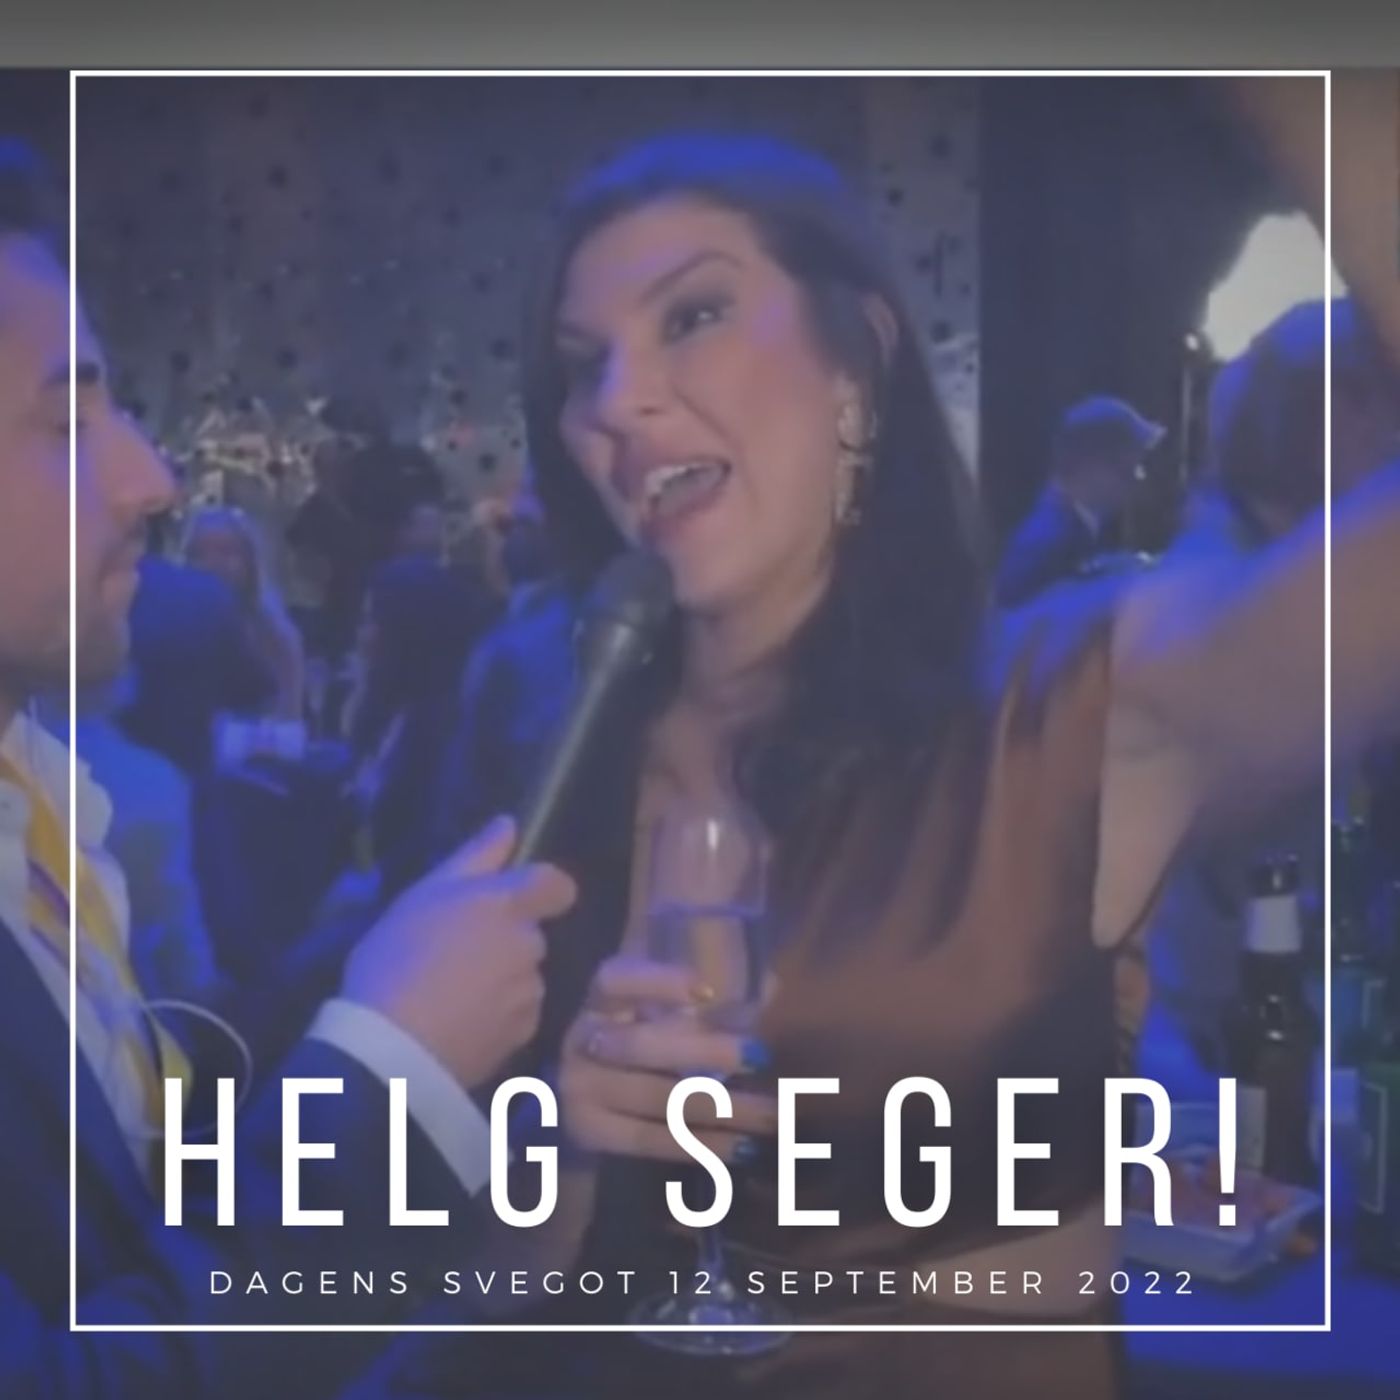 Helg Seger!